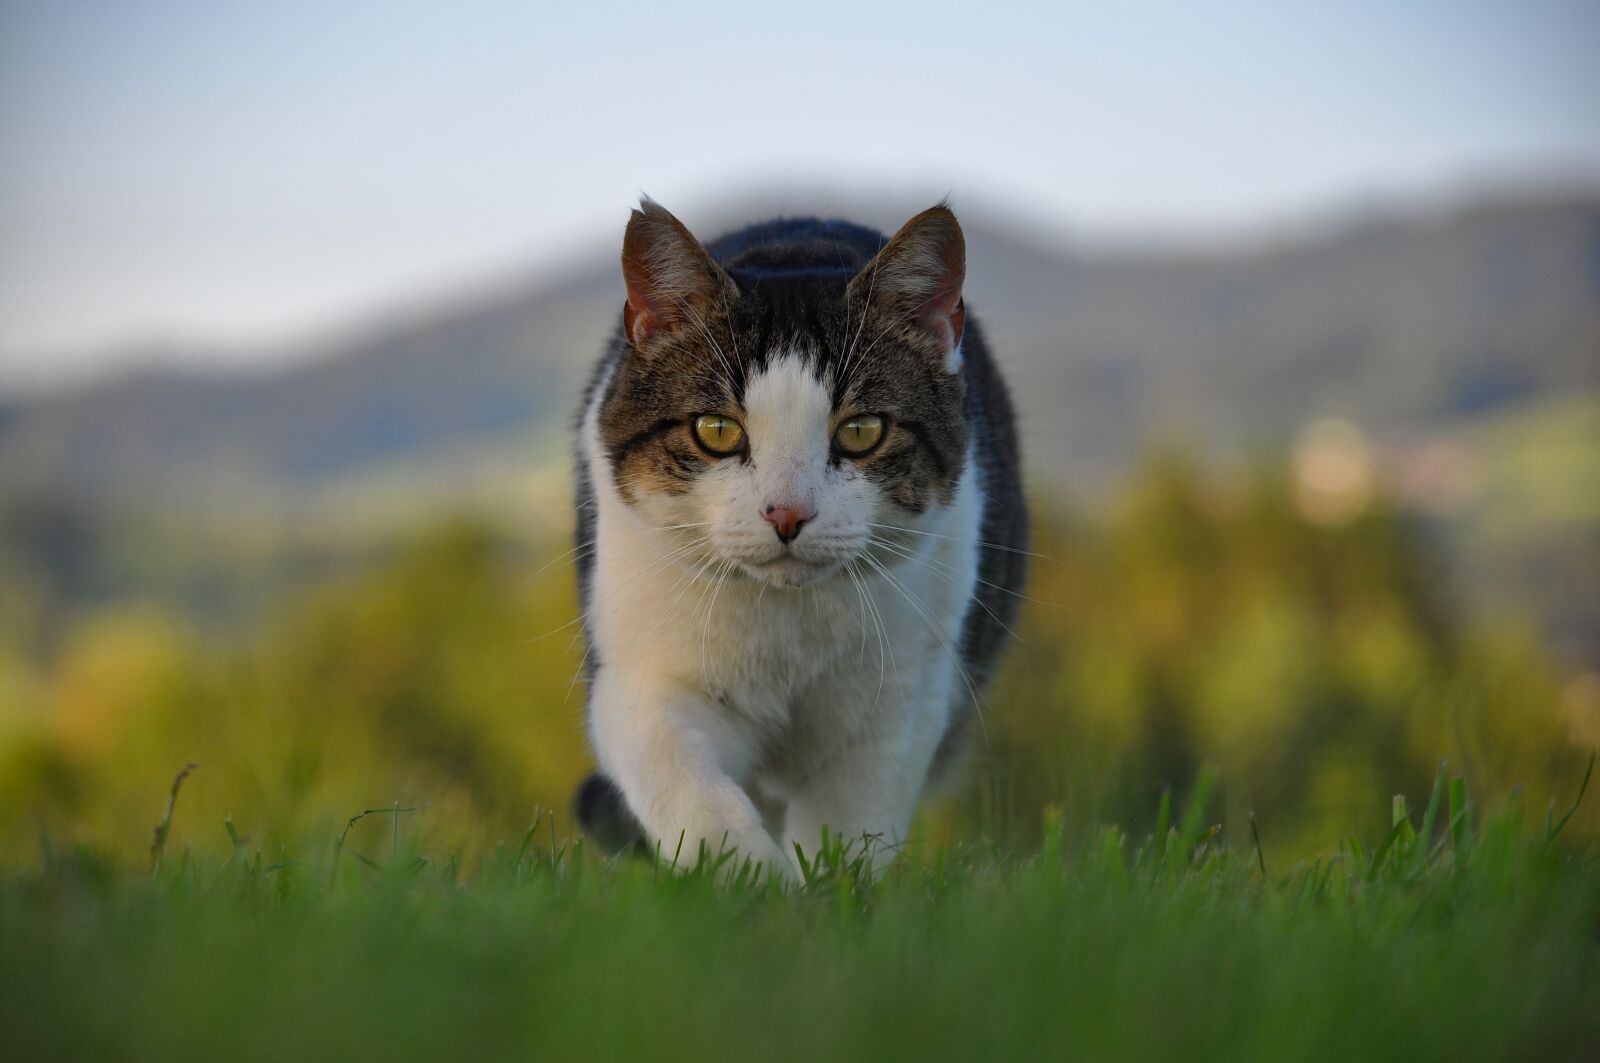 Nikon D90 sample photo. Cat, pet, animal photography